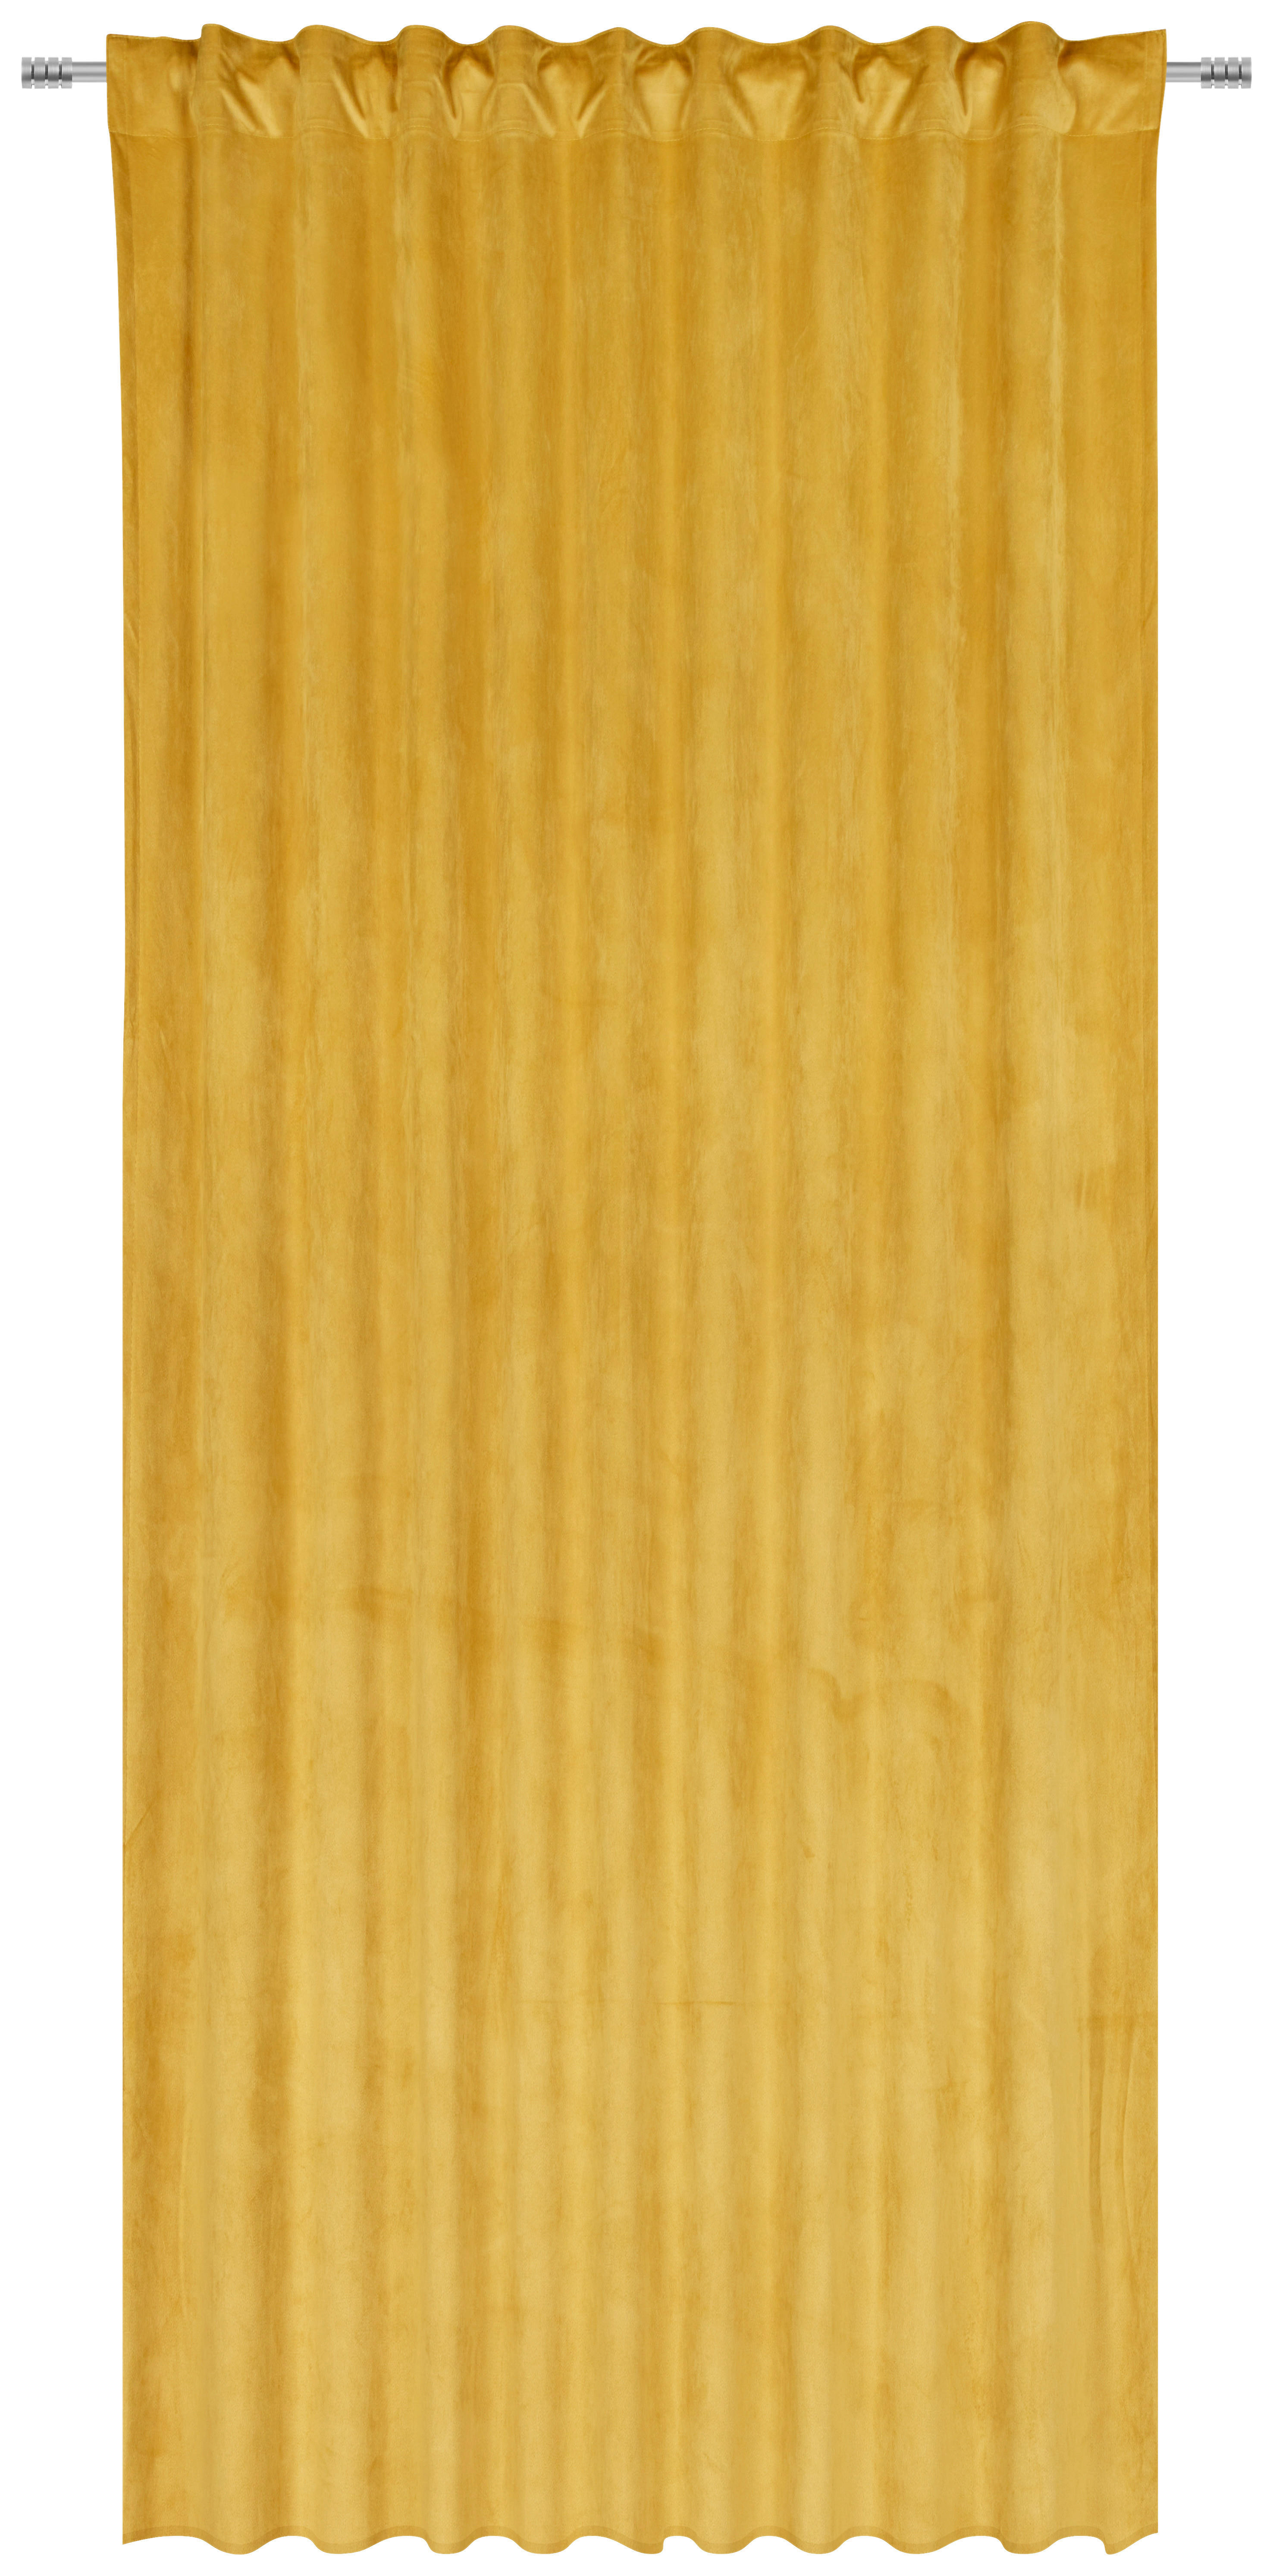 FERTIGVORHANG ZENATO blickdicht 135/245 cm   - Goldfarben, KONVENTIONELL, Textil (135/245cm) - Ambiente